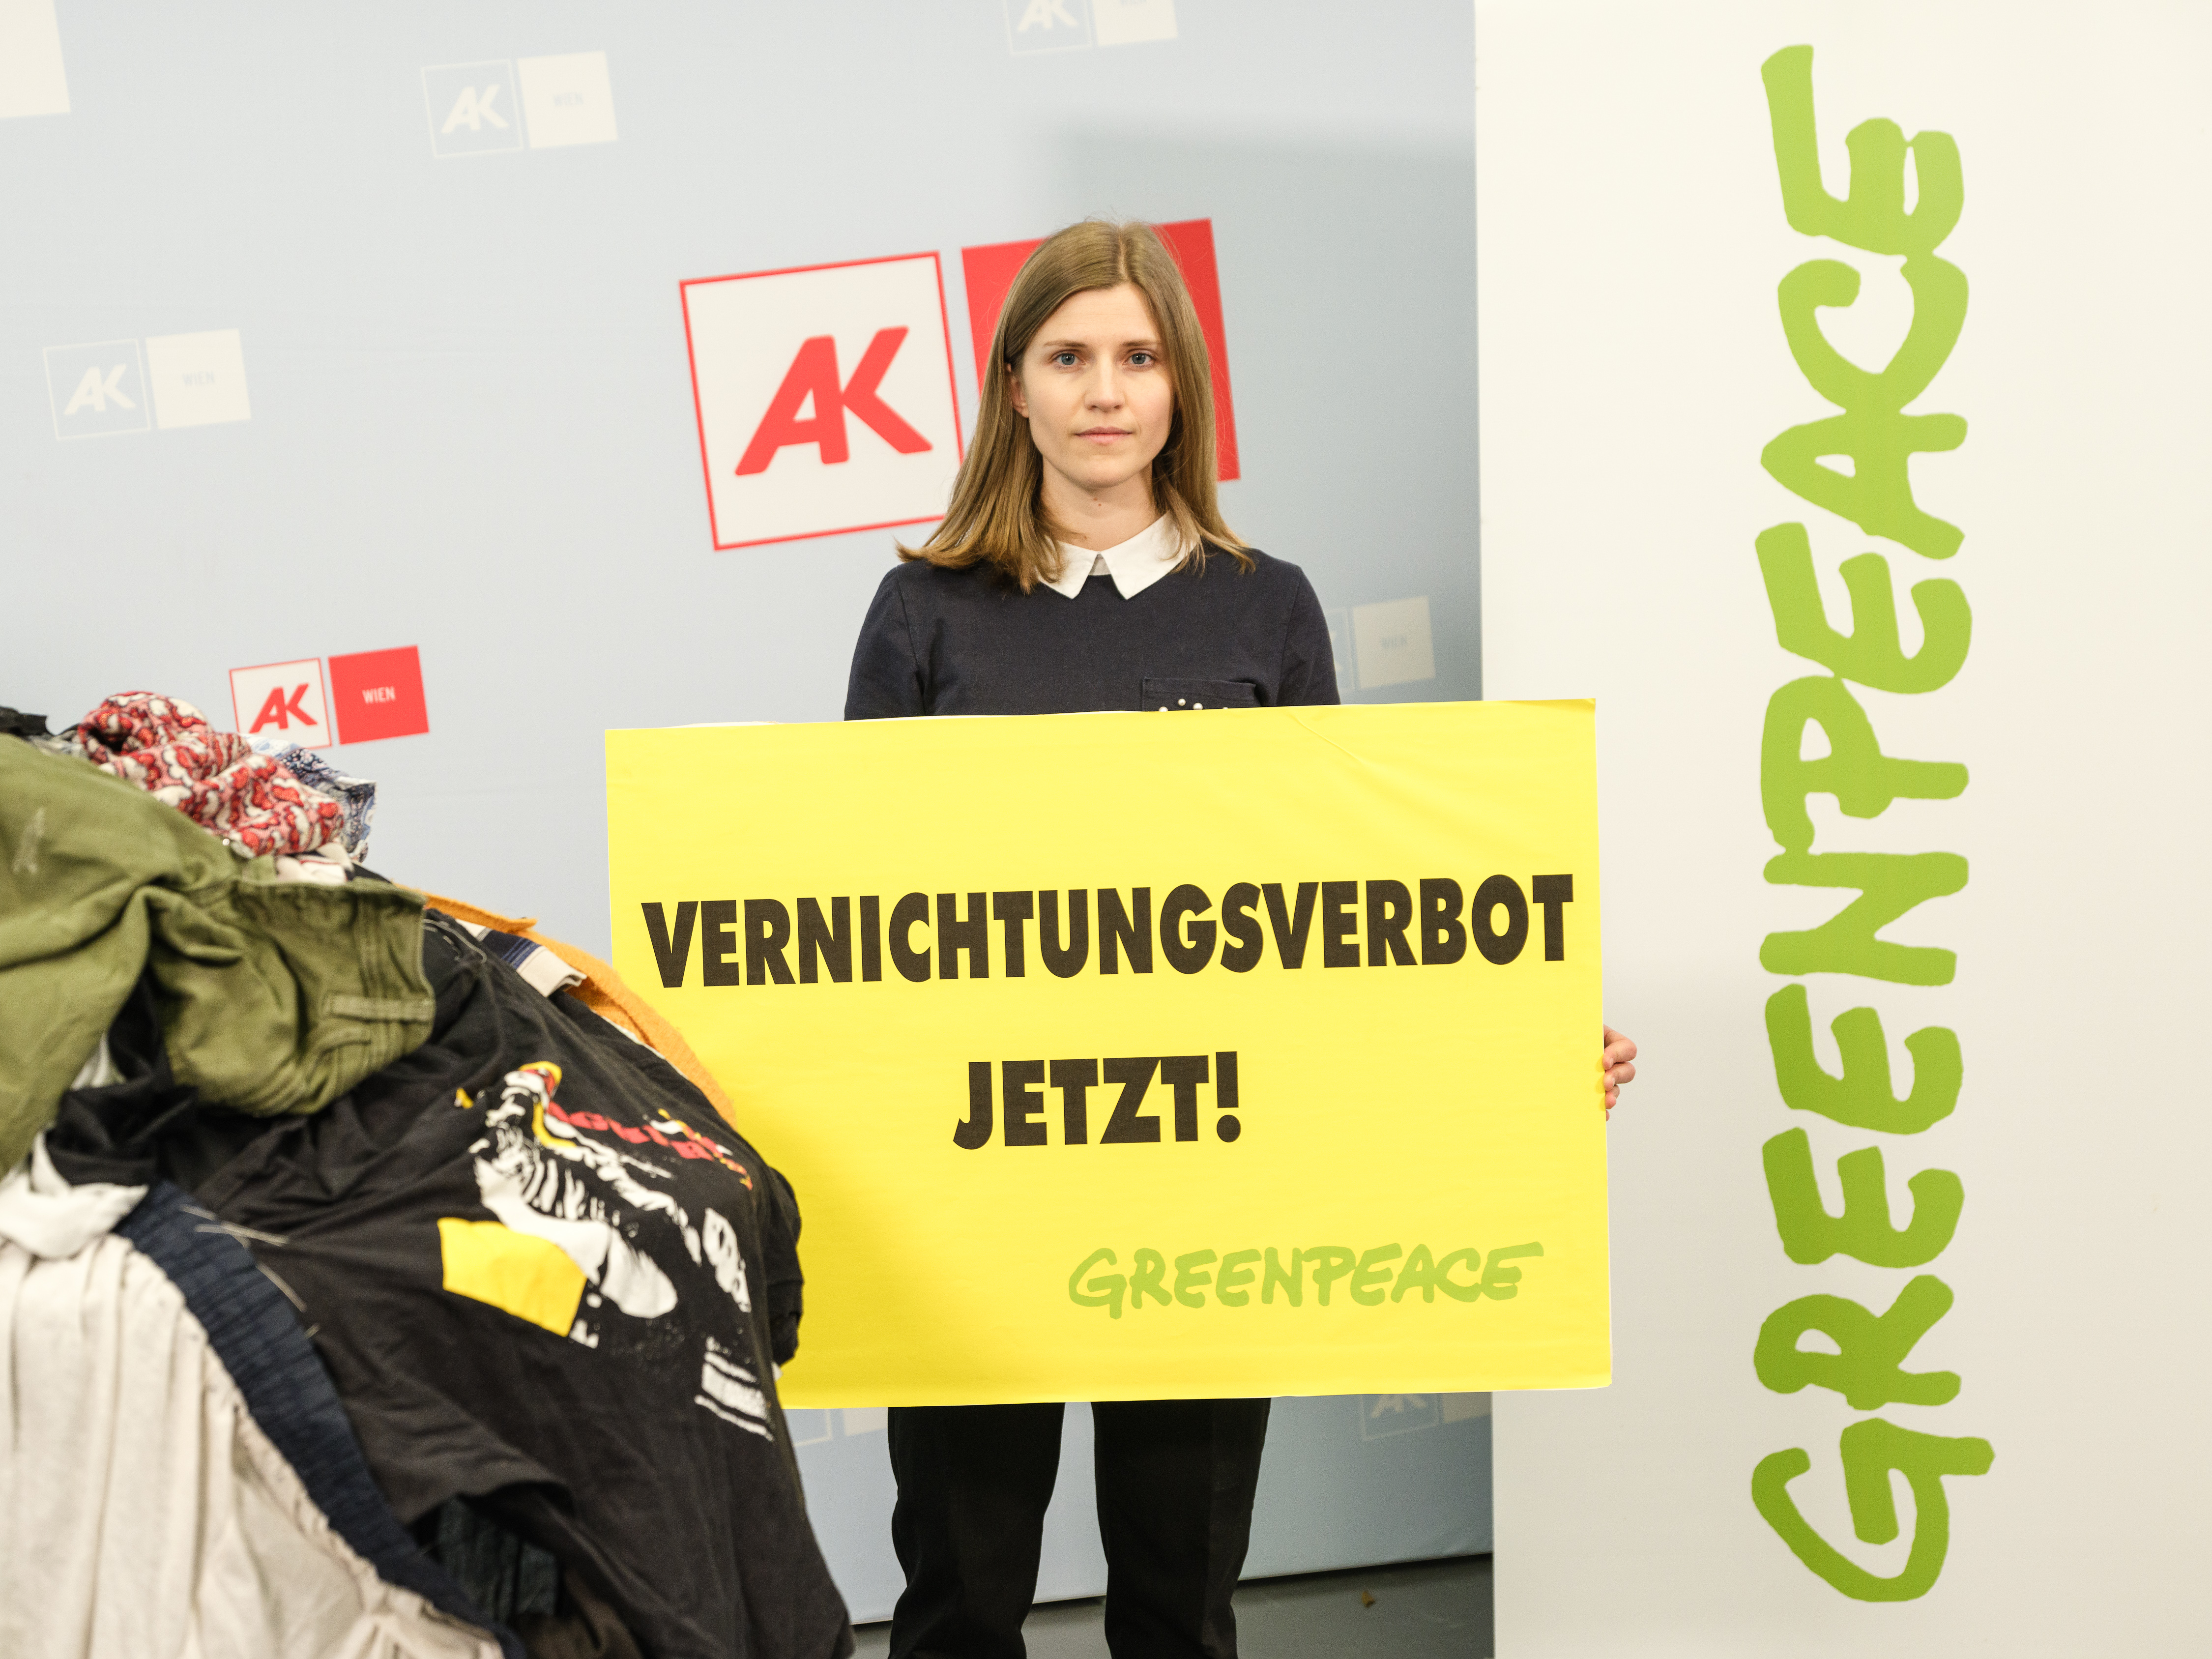 Man sieht eine Greenpeace Campaignerin mit einem Schild mit der Aufschrift 